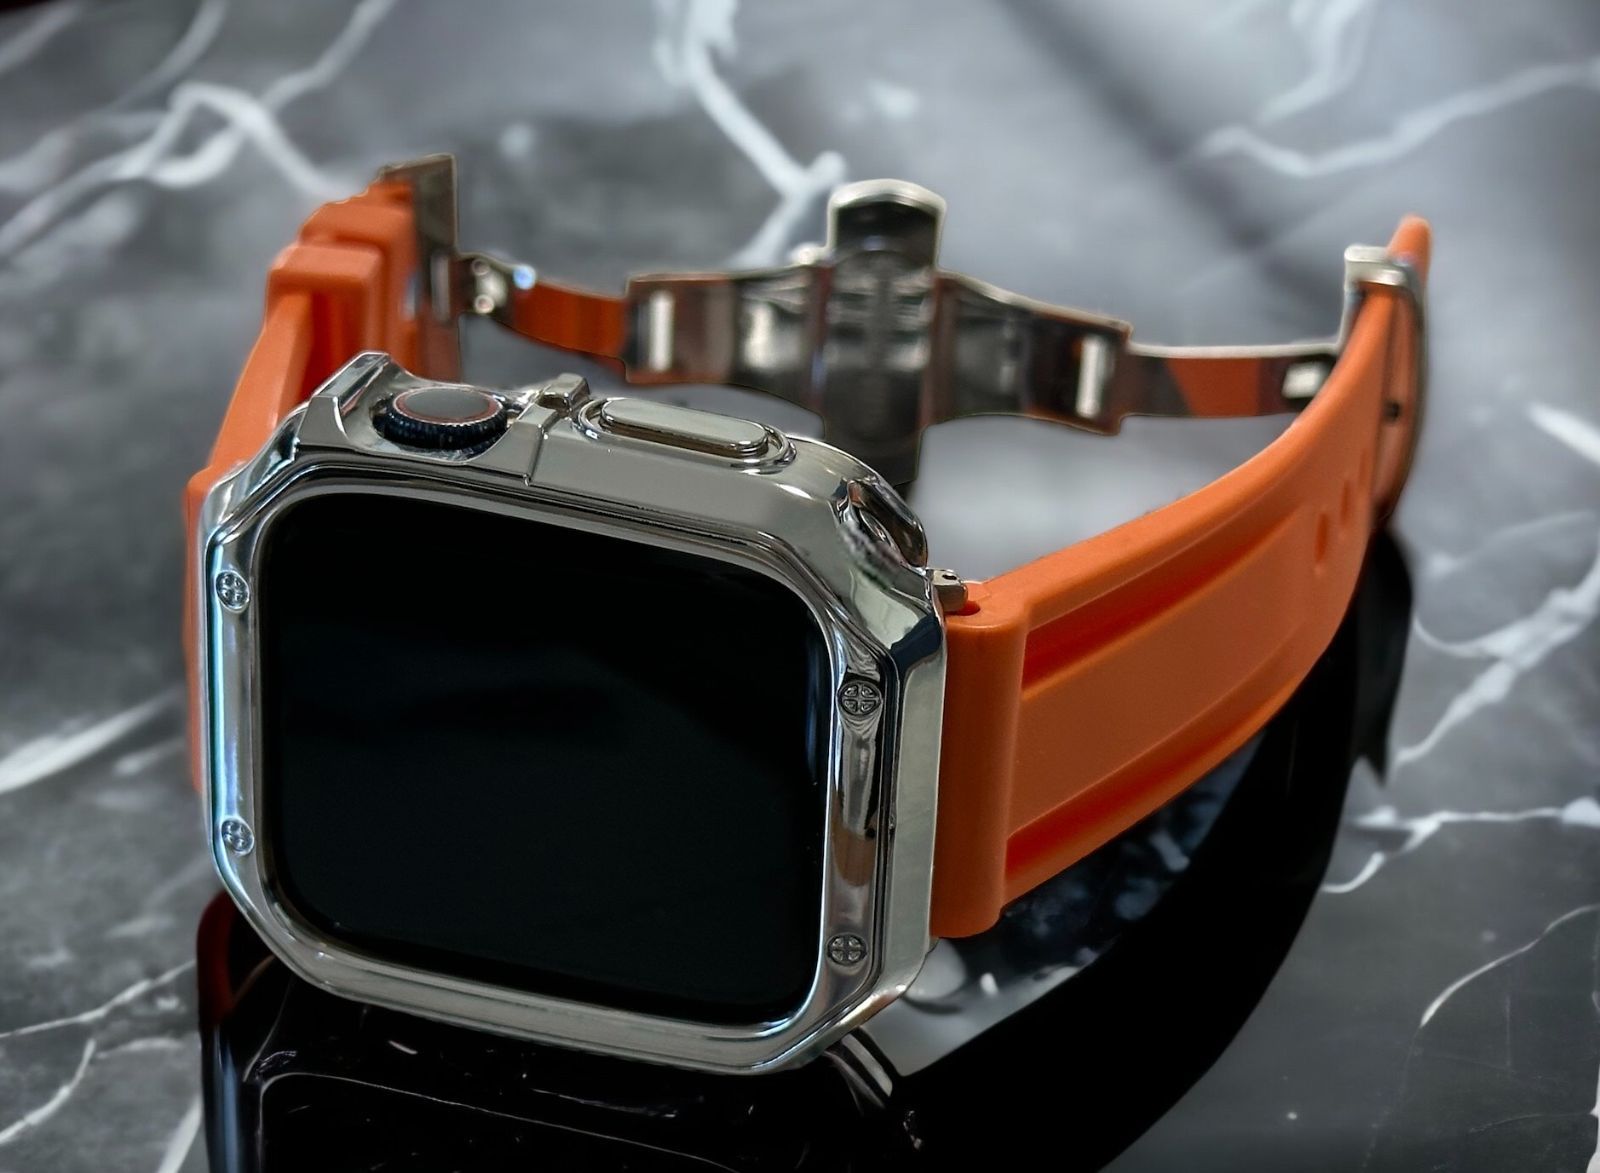 Apple Watch ラバーバンド ベルト&カバー オレンジOS - メルカリ